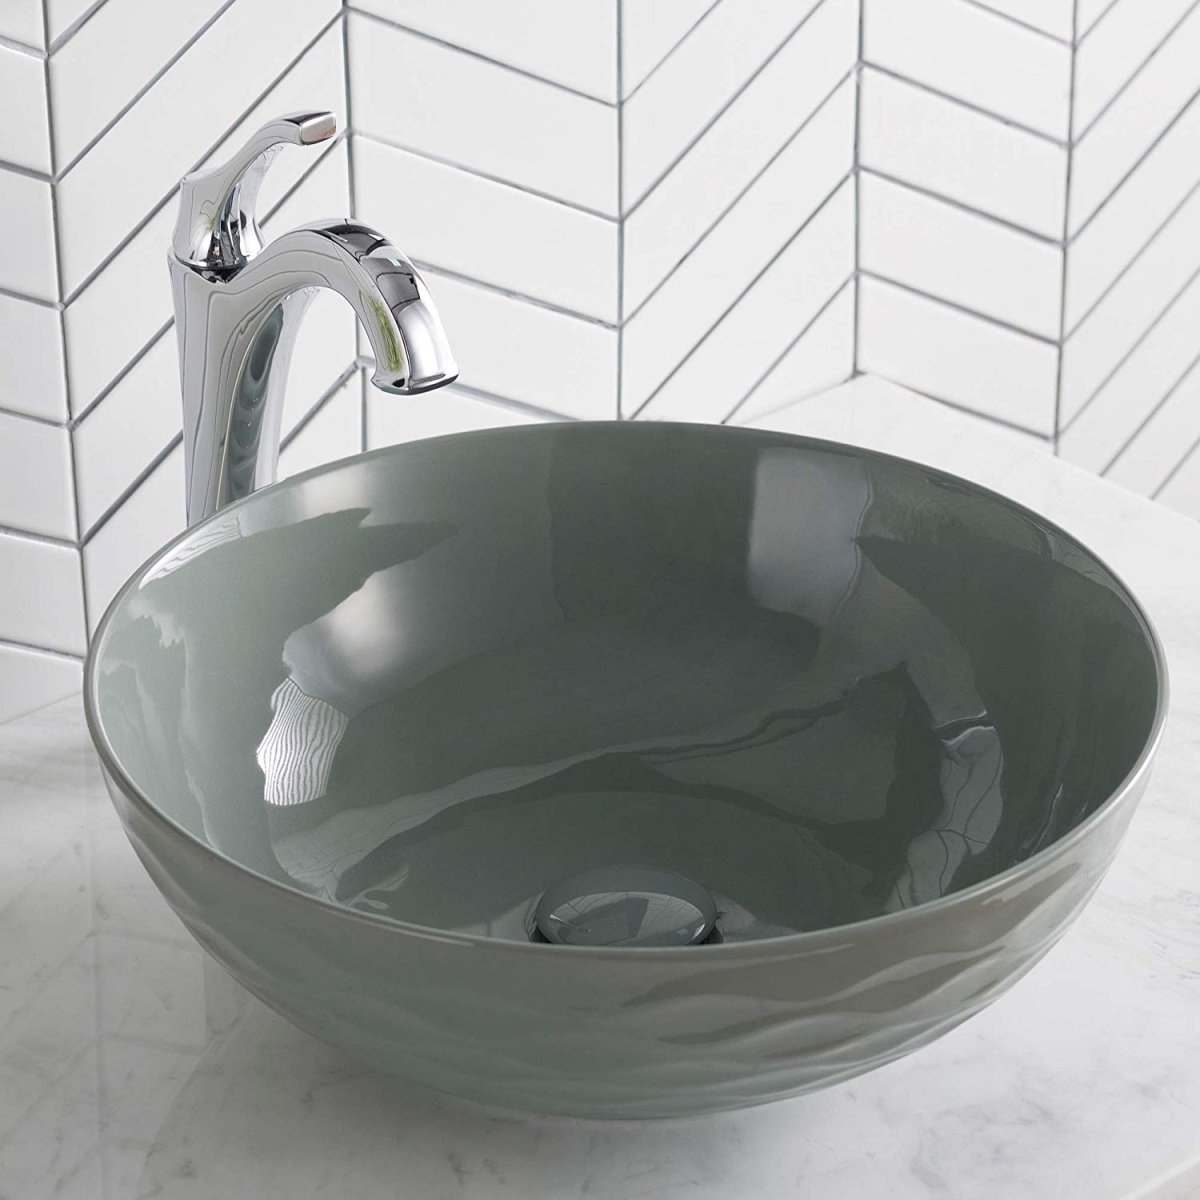 Kraus Kcv-200ggr 16.5 X 5.5 In. Round Porcelain Ceramic Vessel Bathroom Sink, Gray